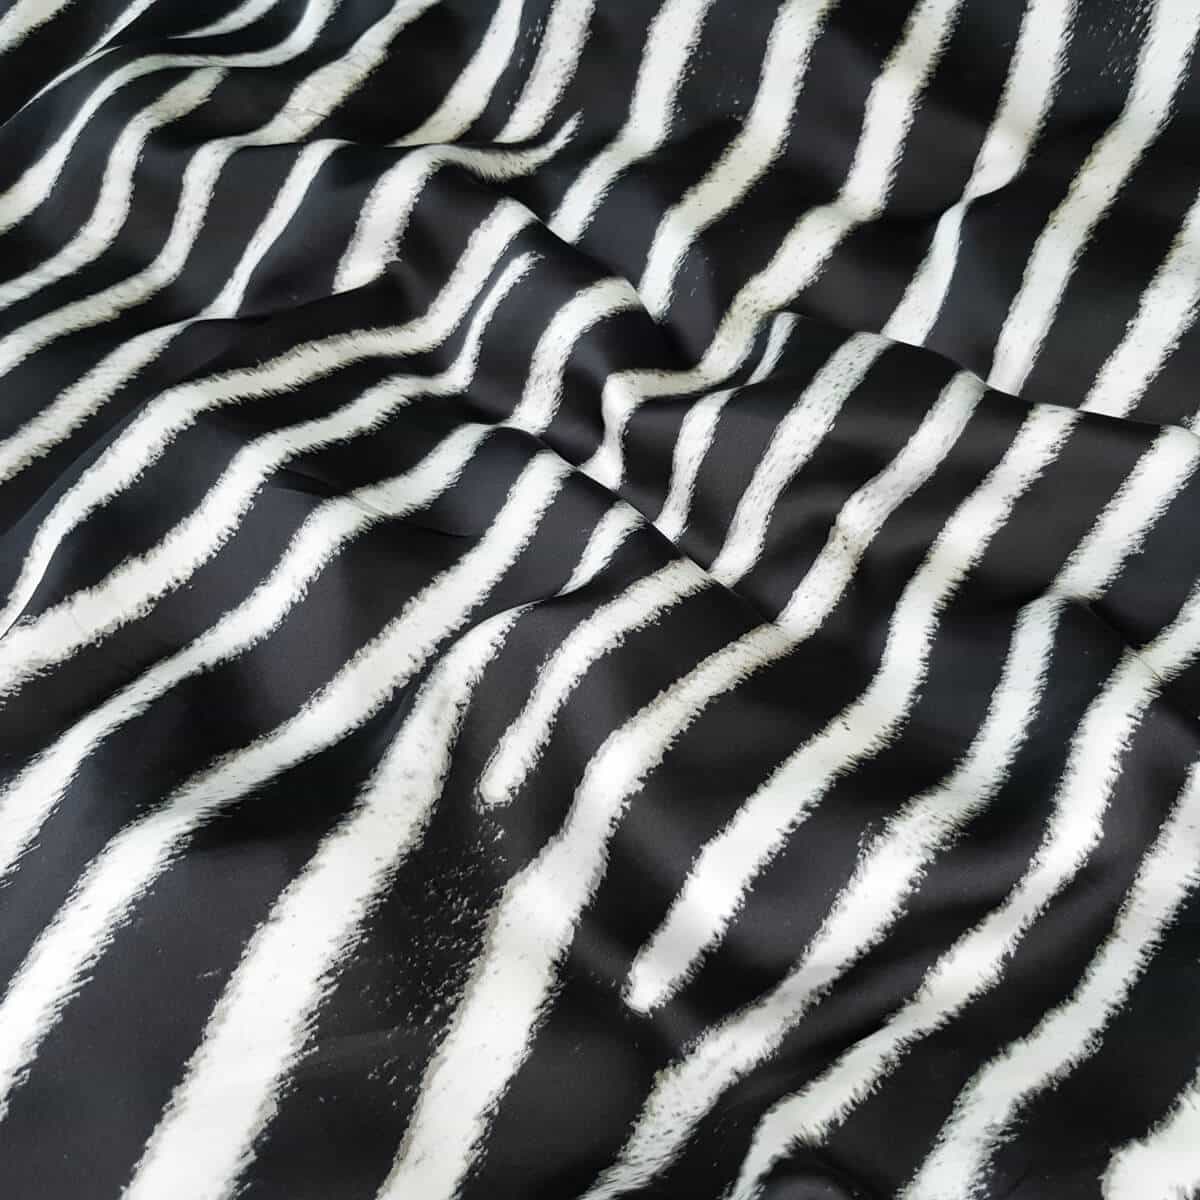 czysty jedwab czarno bialy material zebra polmatB